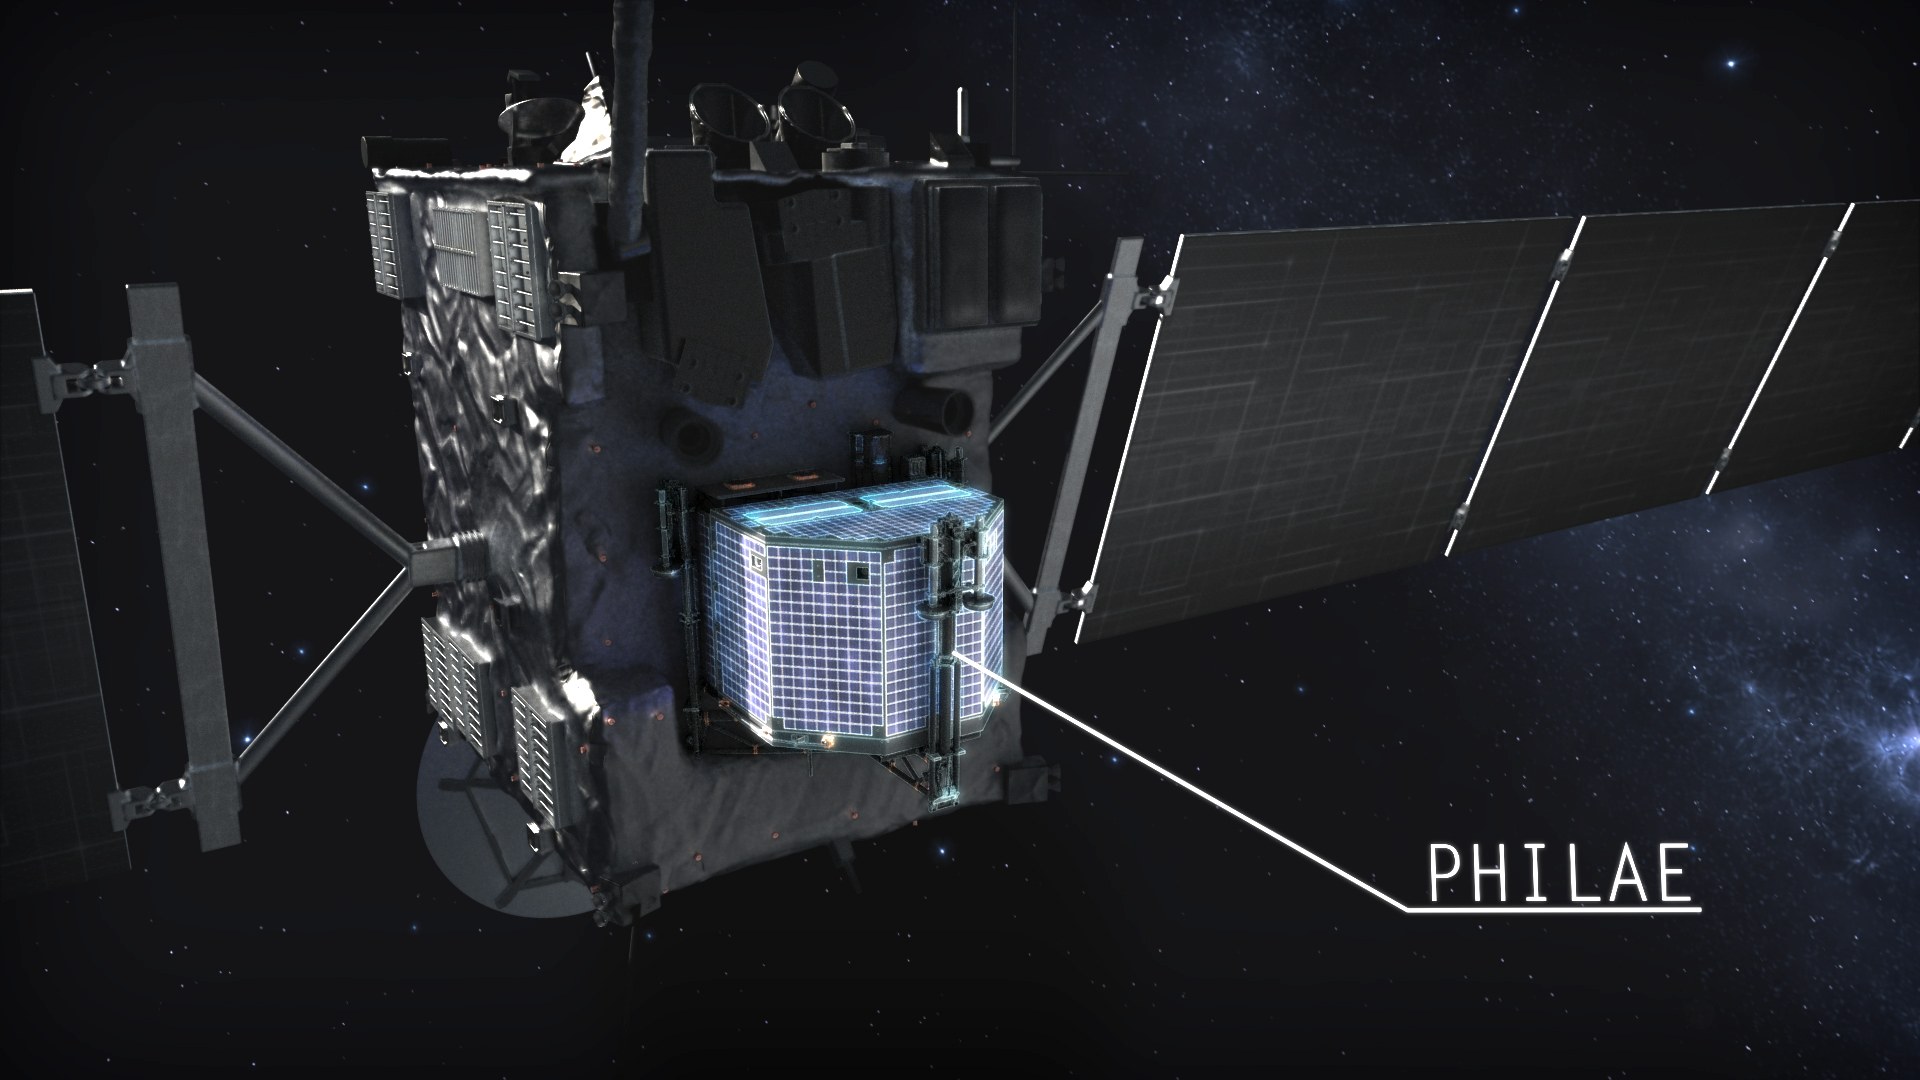 Der Lander Philae an Bord der europäischen Sonde Rosetta